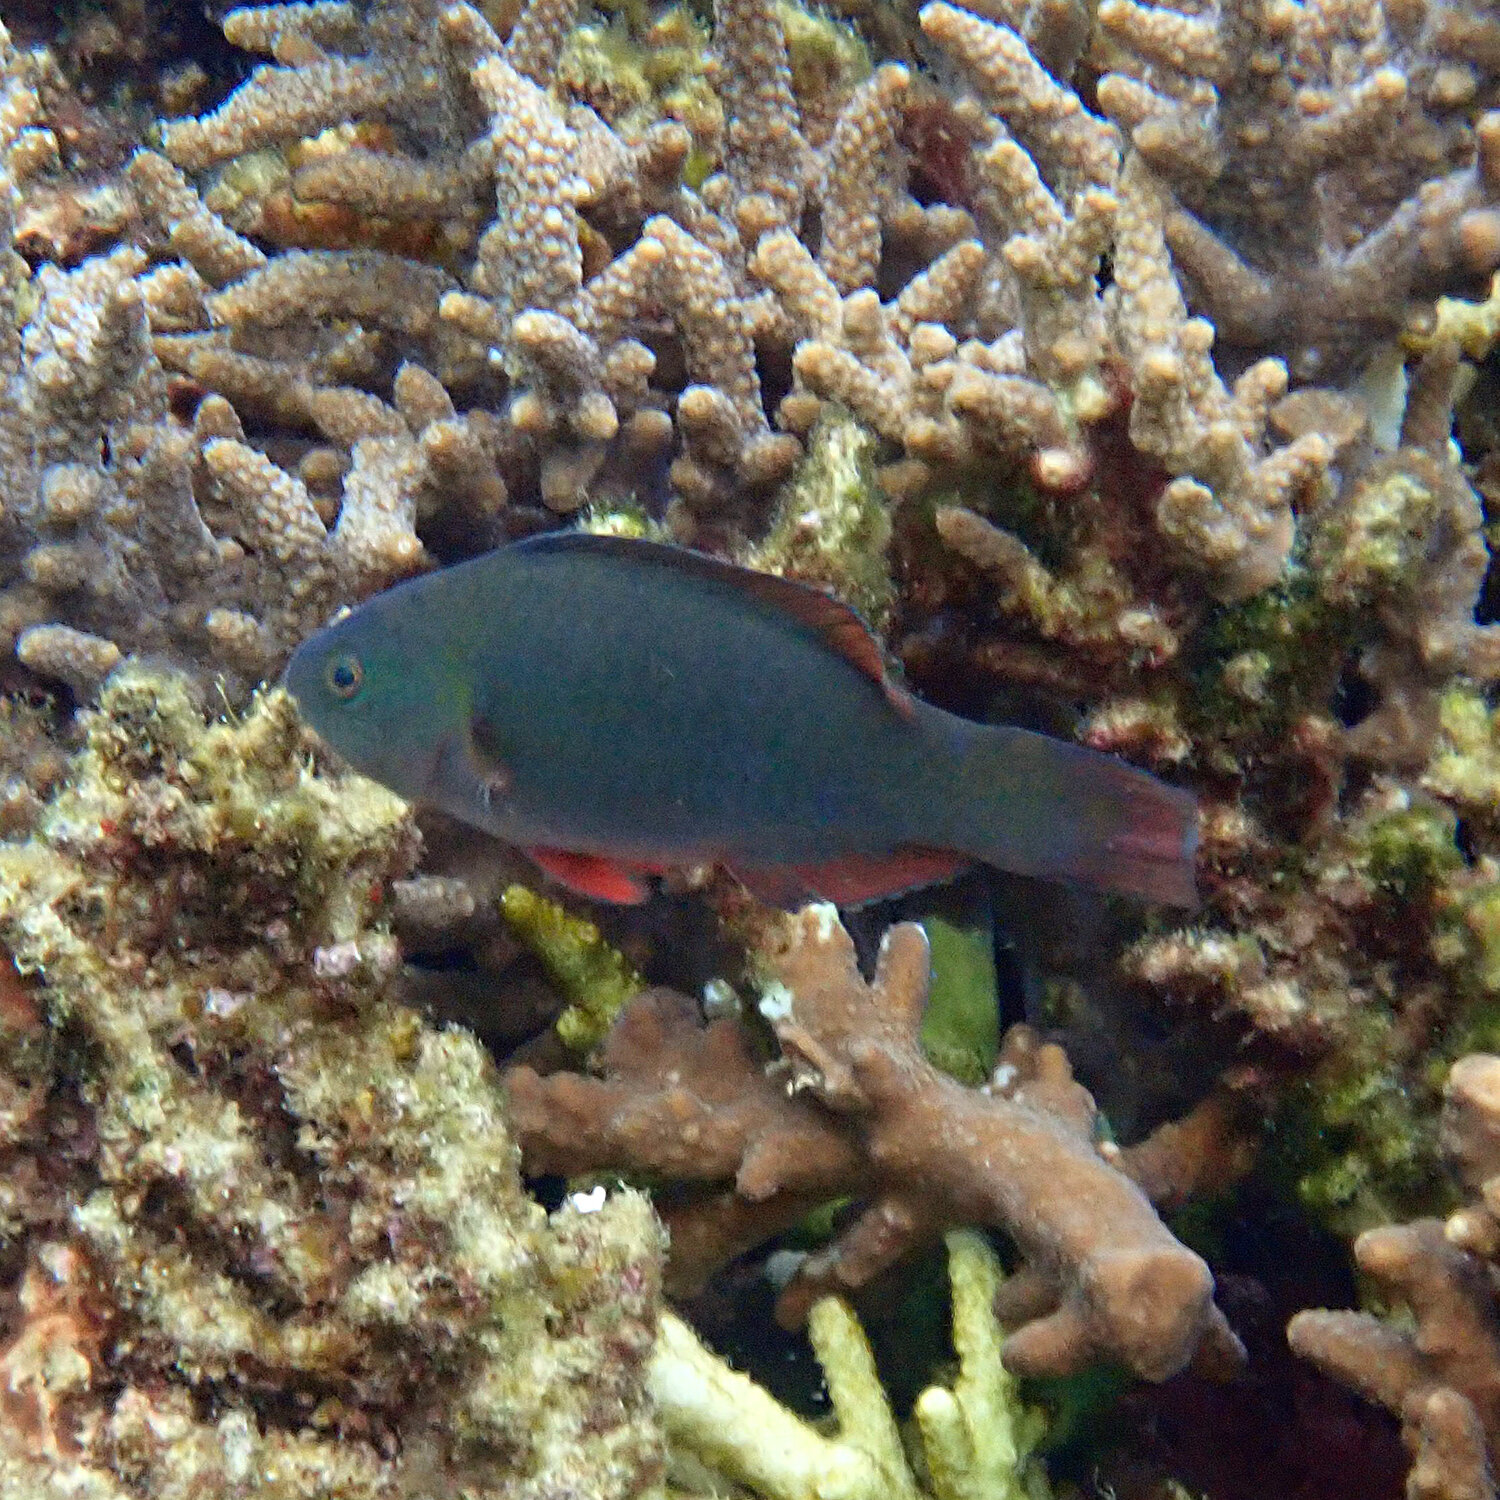 Palenose parrotfish - Scarus psittacus